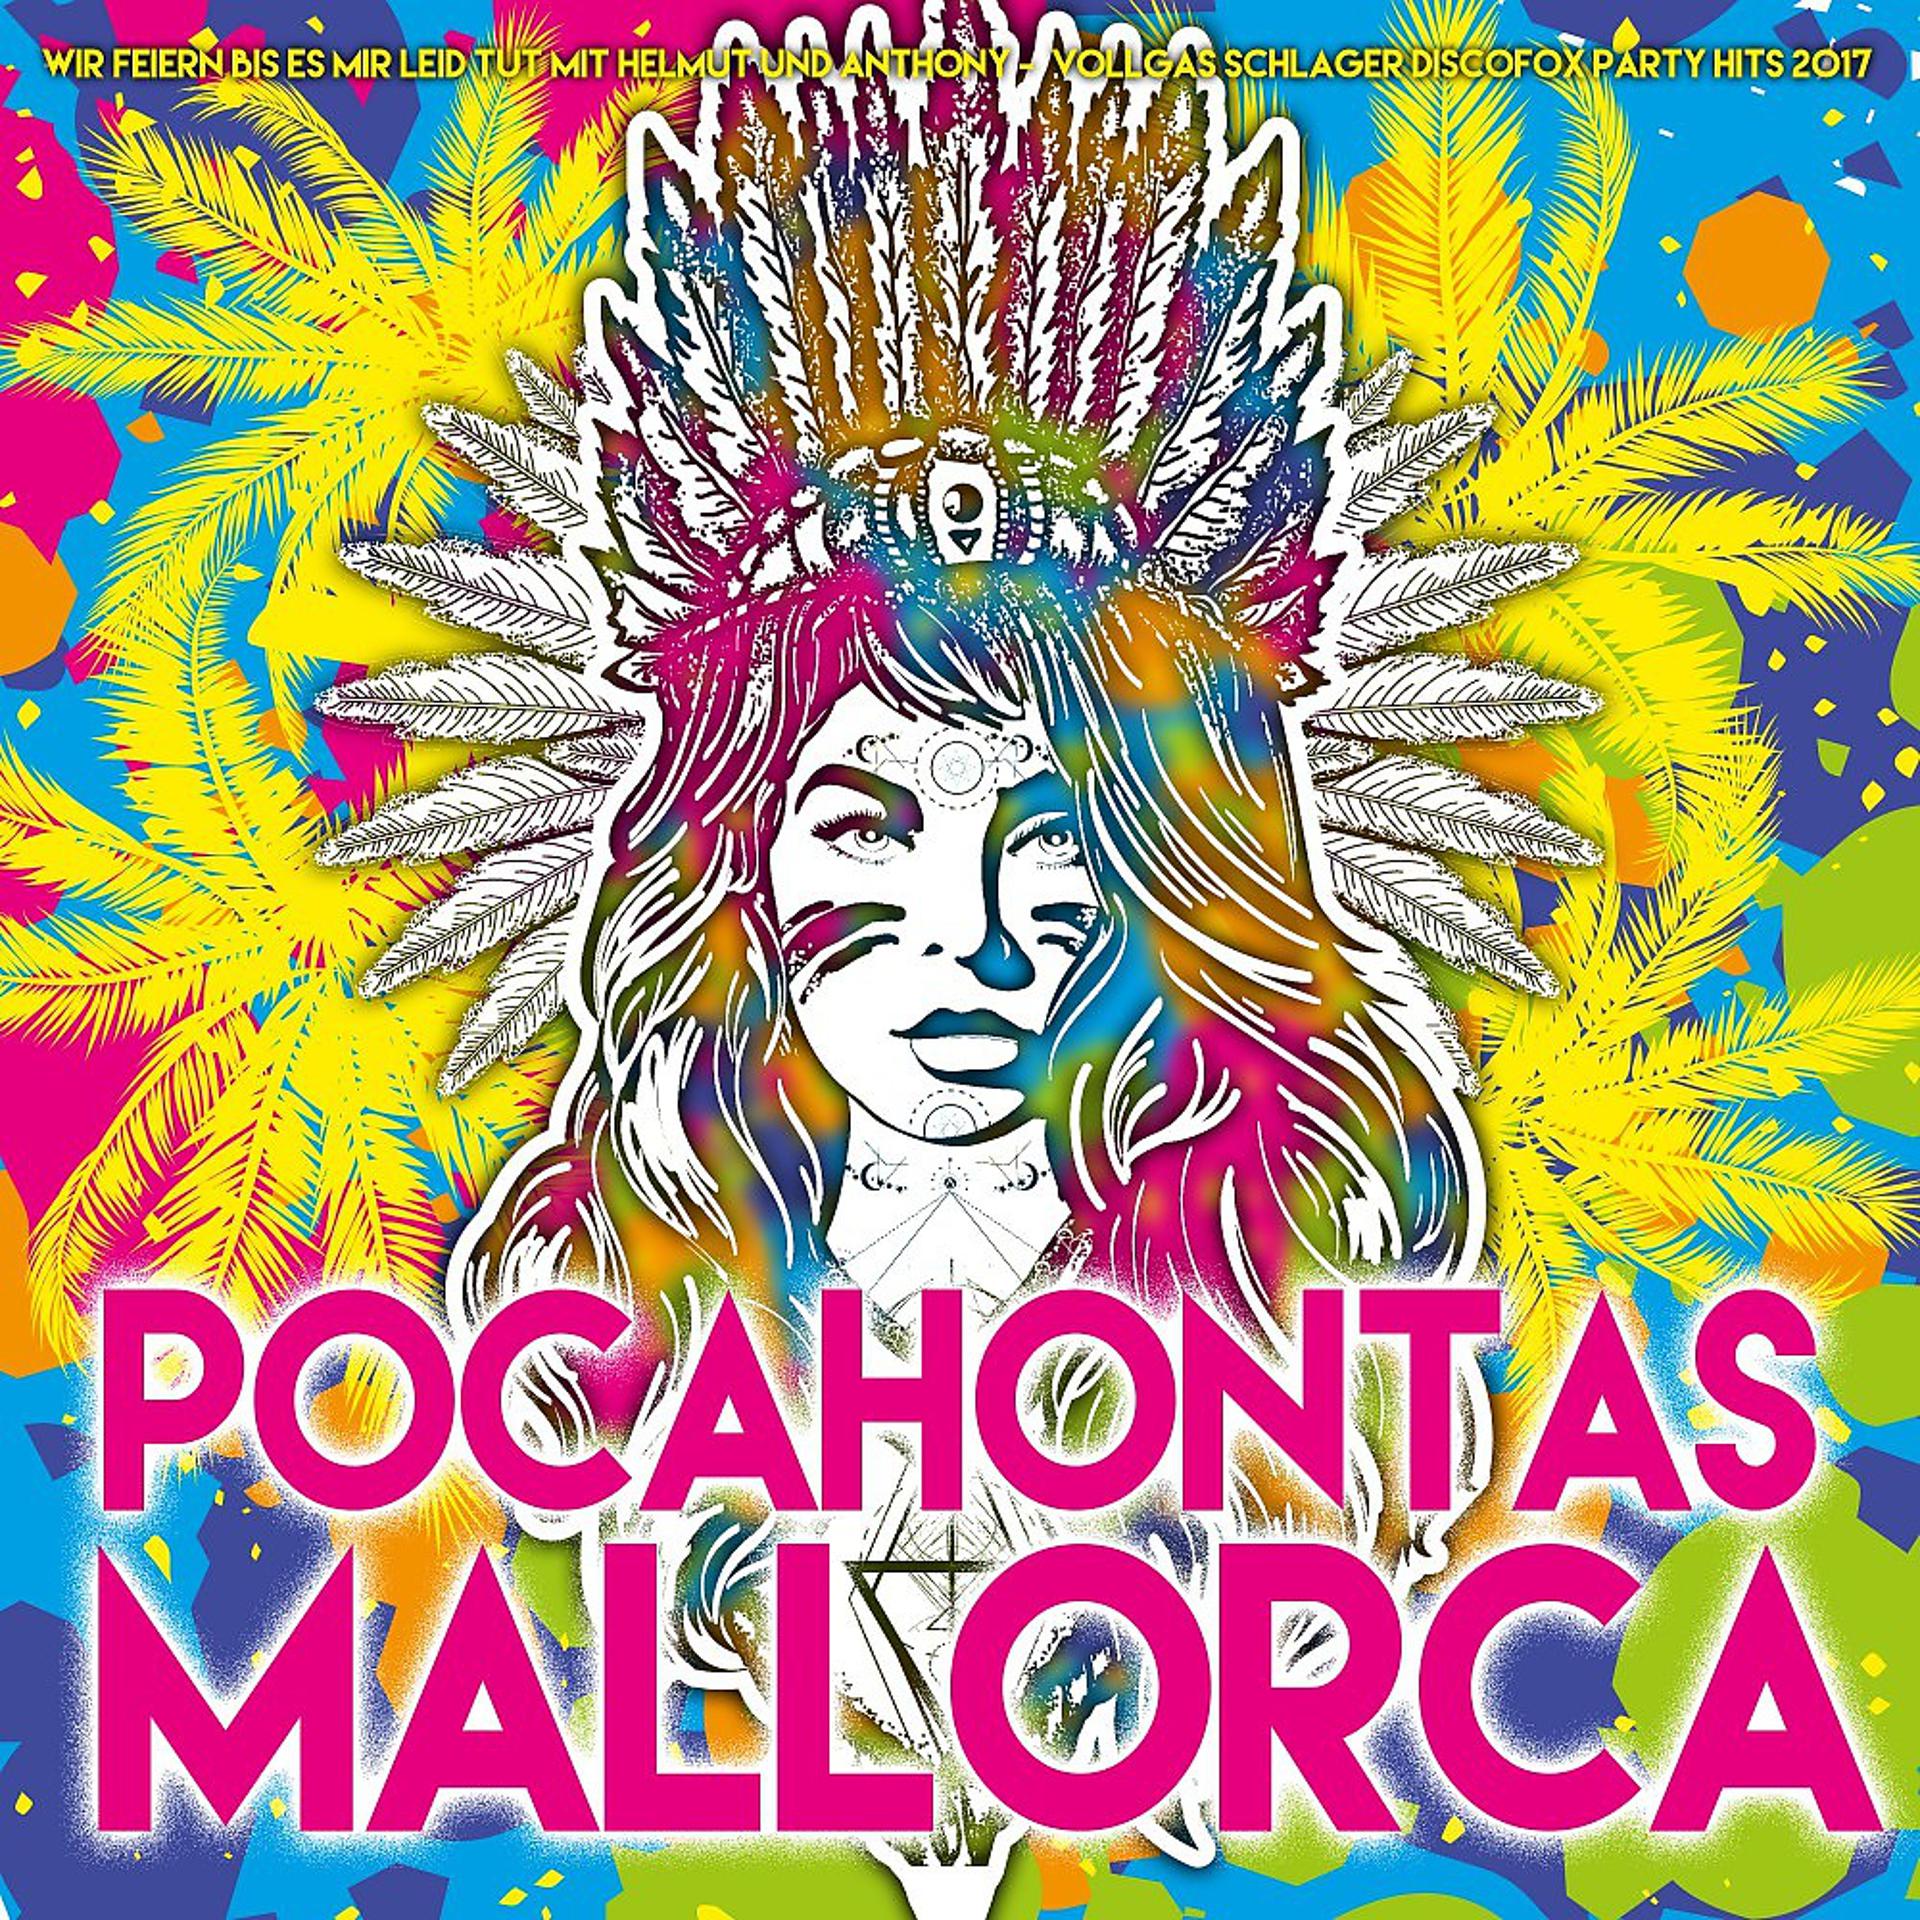 Постер альбома Pocahontas Mallorca - Wir feiern bis es mir leid tut mit Helmut und Anthony - Mallorca Vollgas Schlager Discofox Party 2017